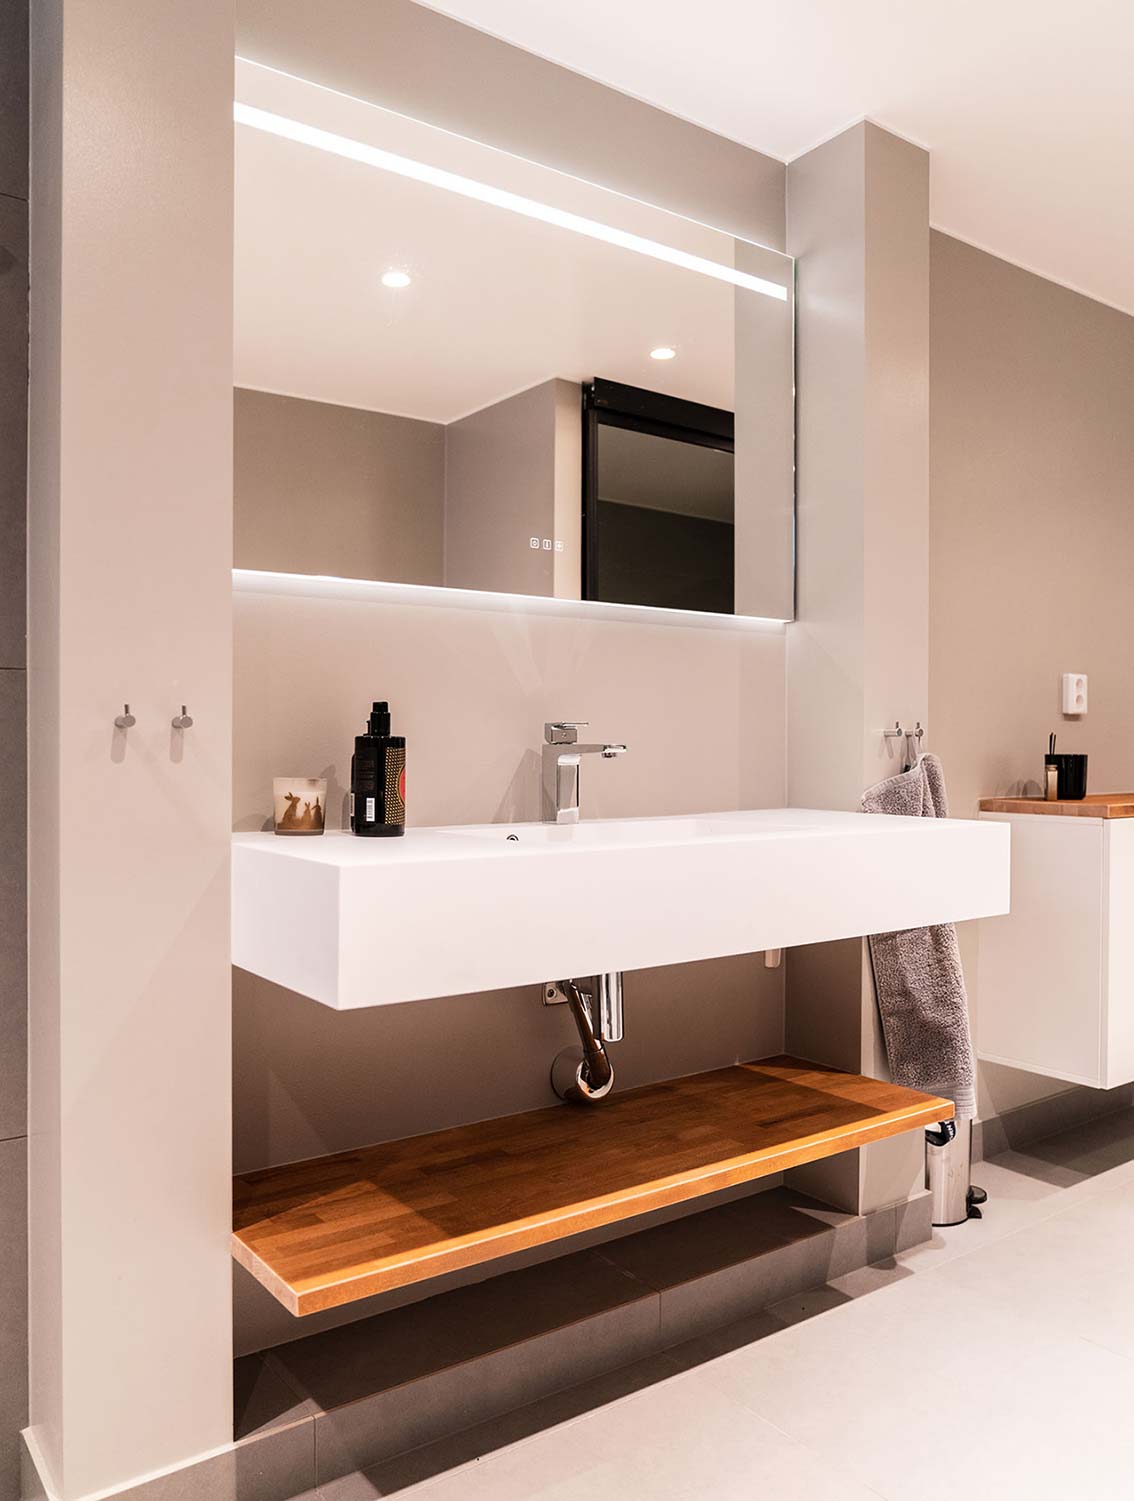 Lyxigt badrum med beiga väggar, ett stort vitt avlångt handfat, en stor spegel med inbyggd belysning och ett avlastningsbord under handfatet i trä